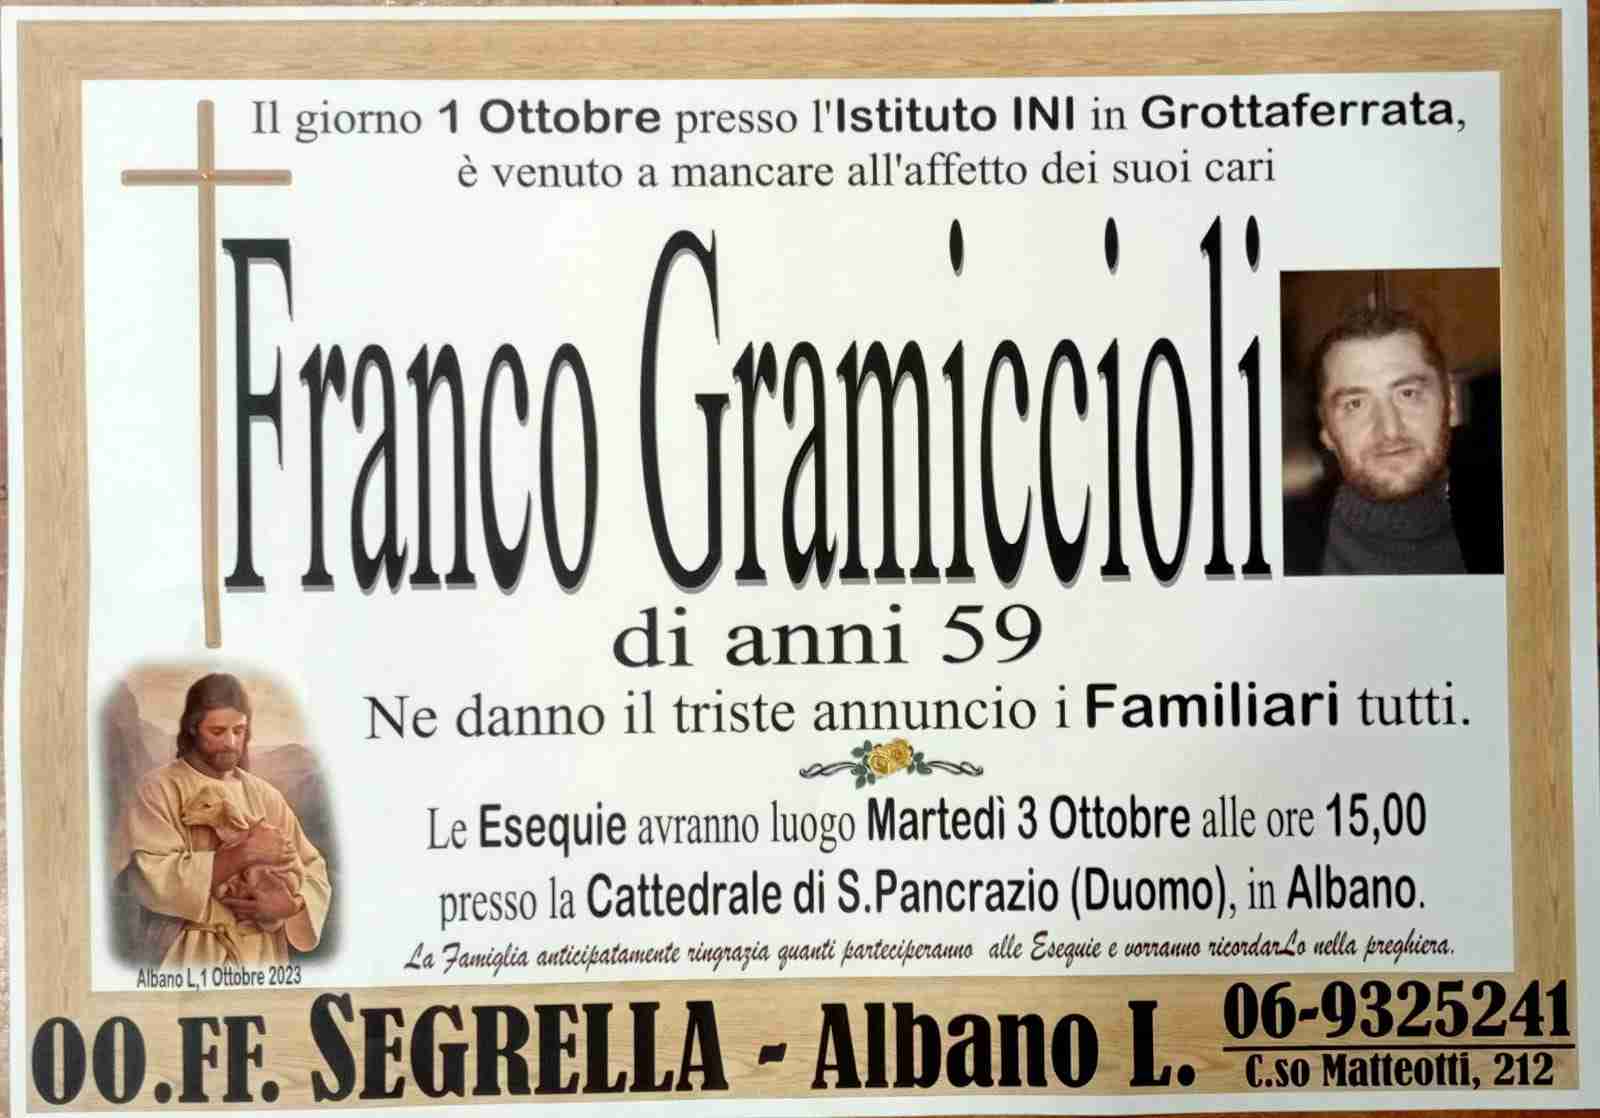 Franco Gramiccioli